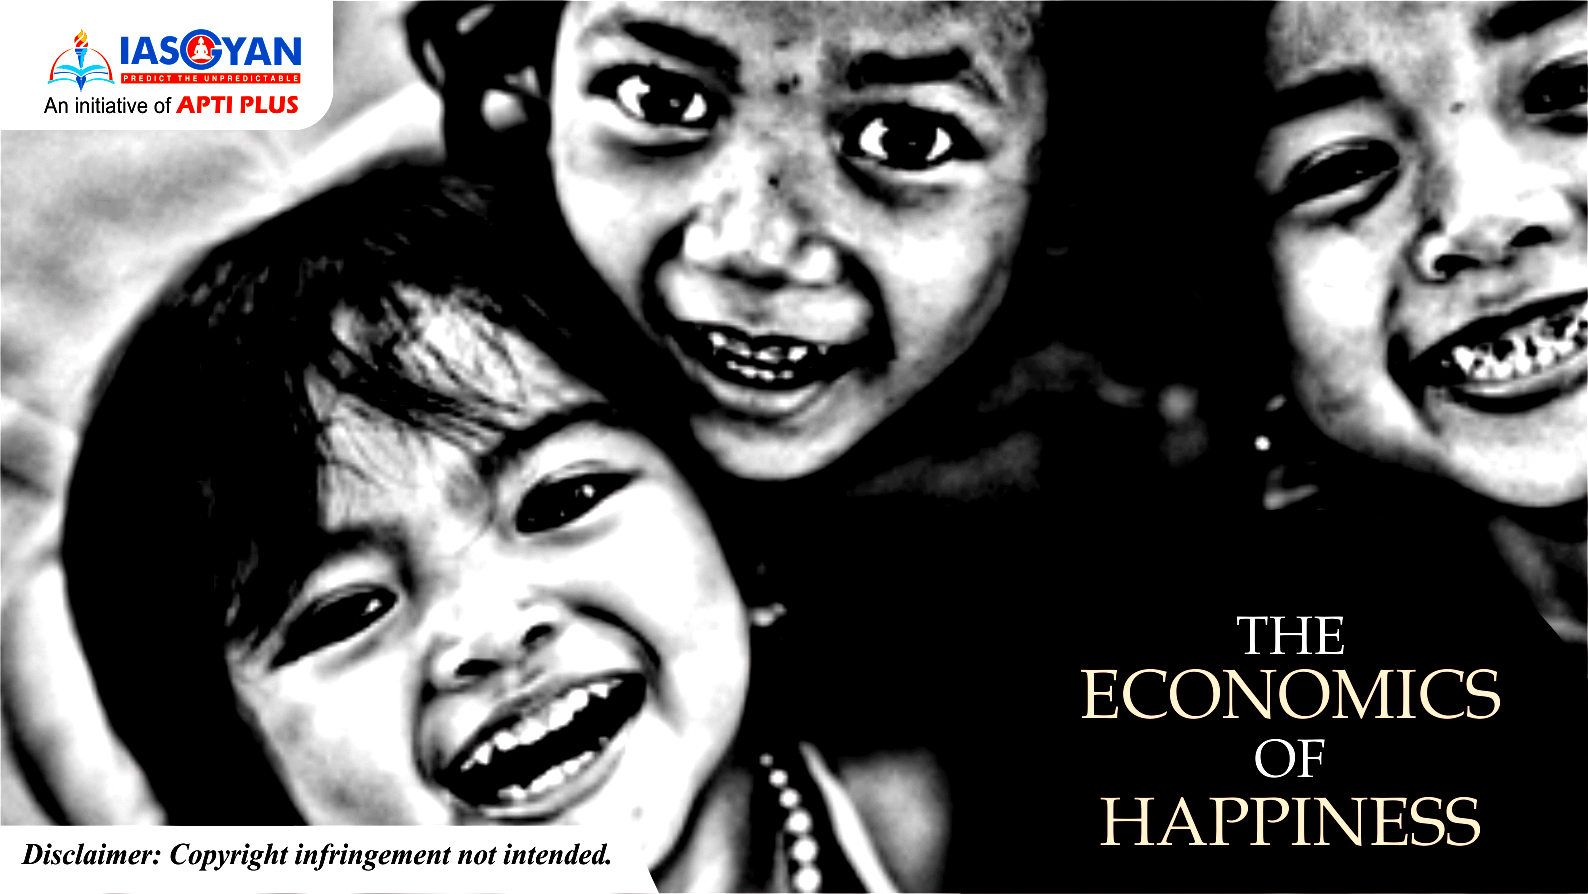 THE ECONOMICS OF HAPPINESS